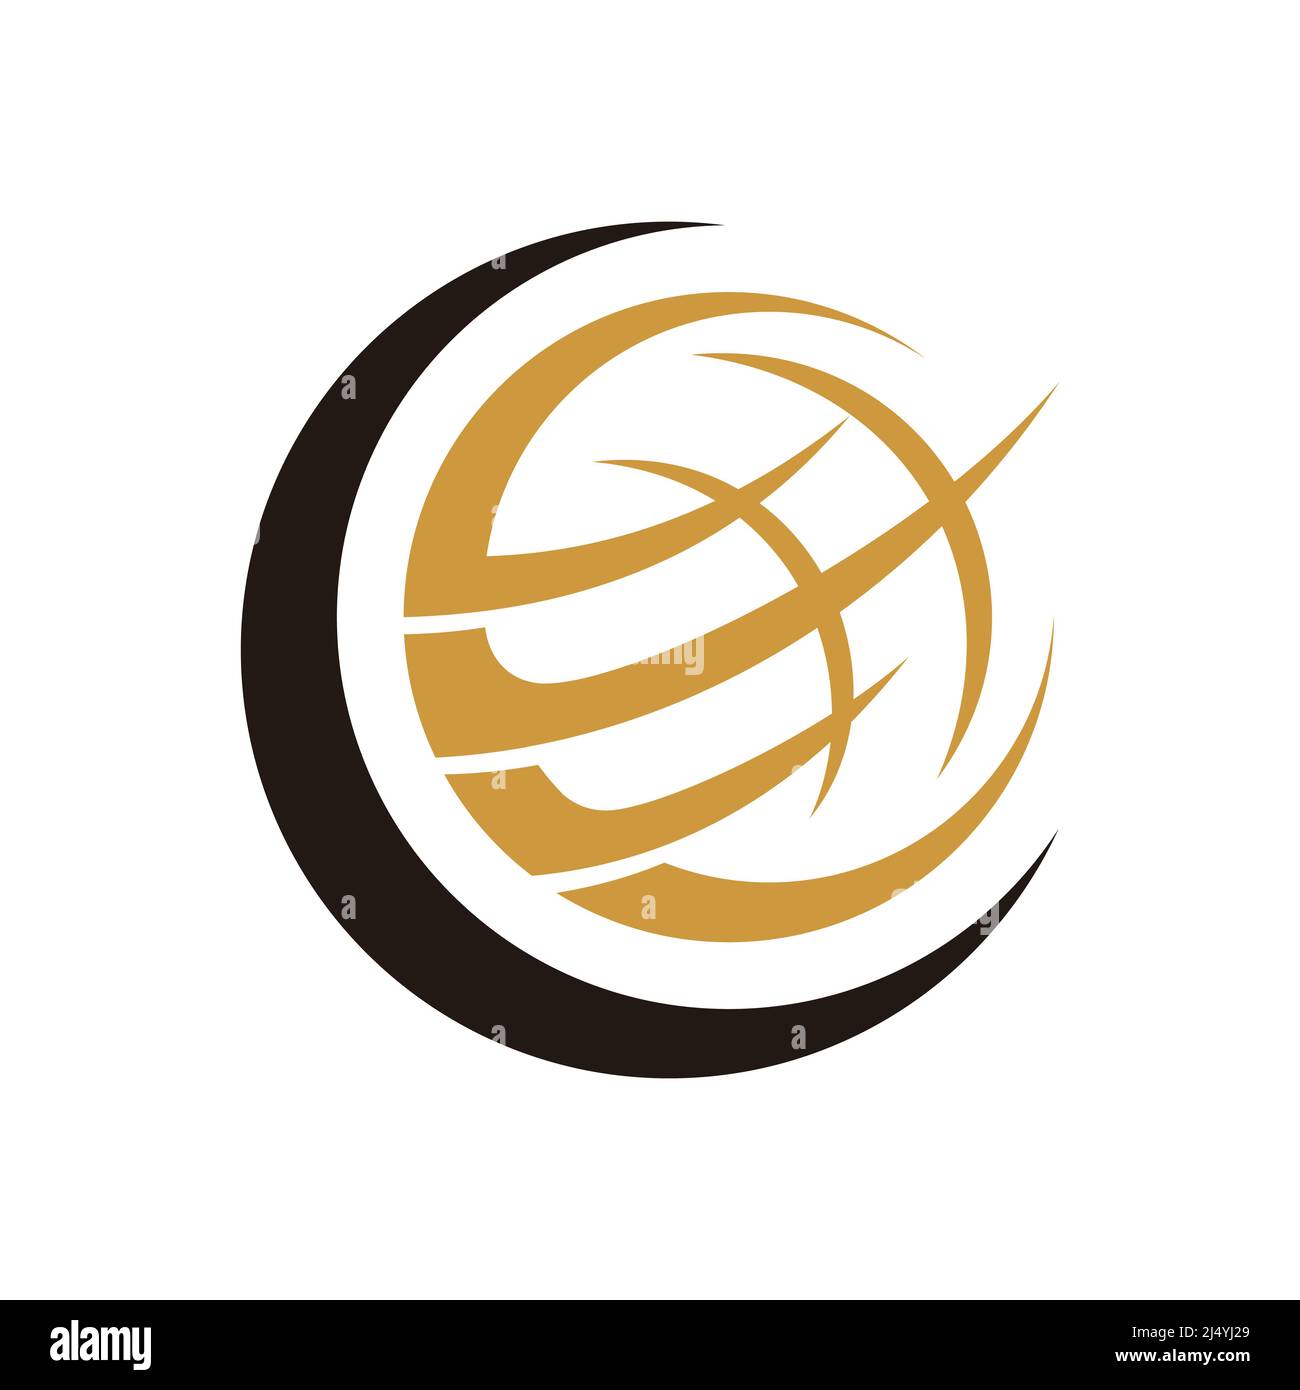 raptors black and gold logo